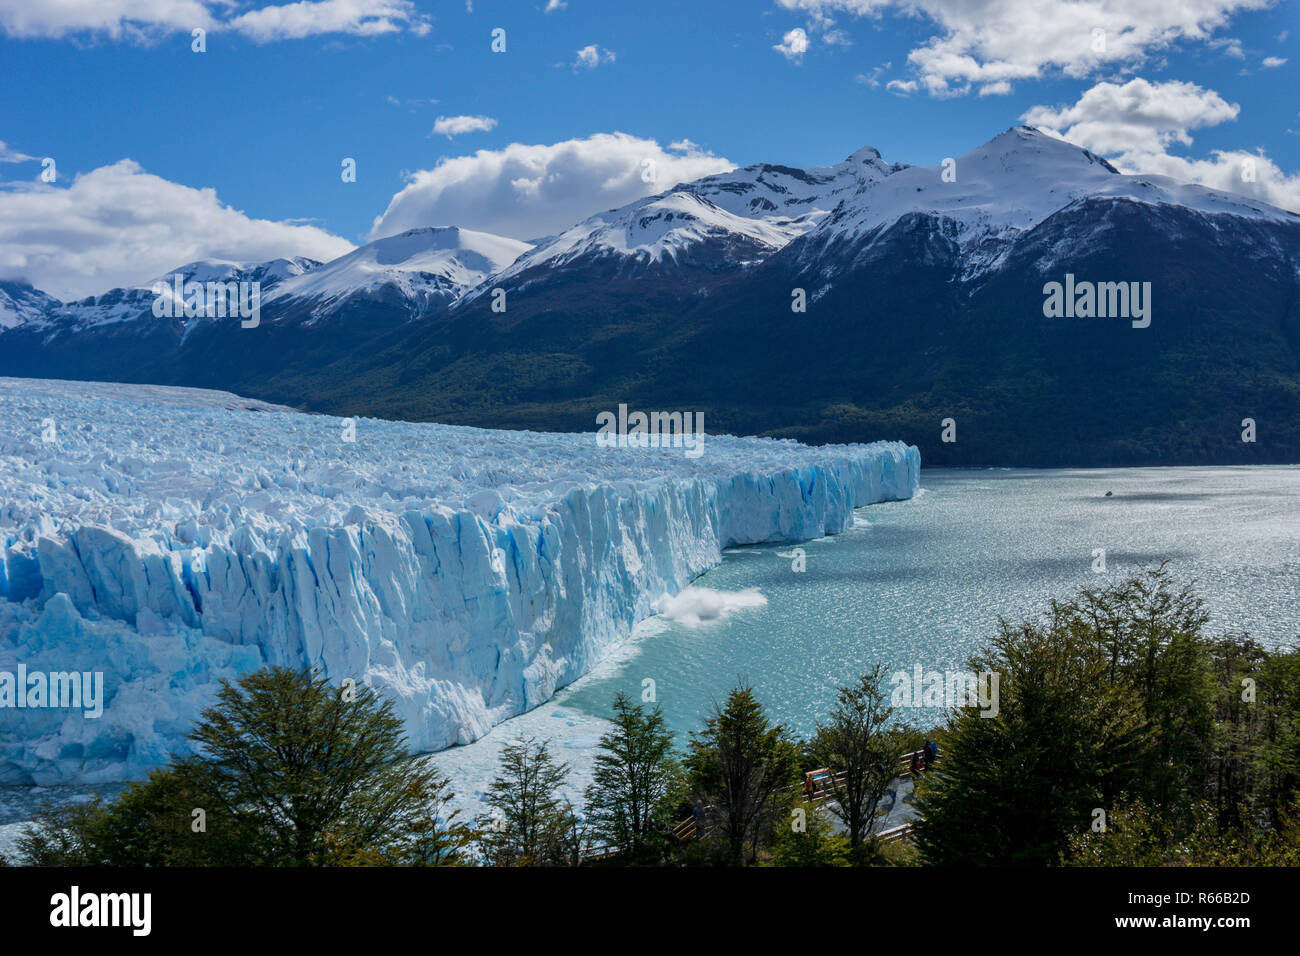 Scenic views of Glaciar Perito Moreno, El Calafate, Argentina Stock Photo